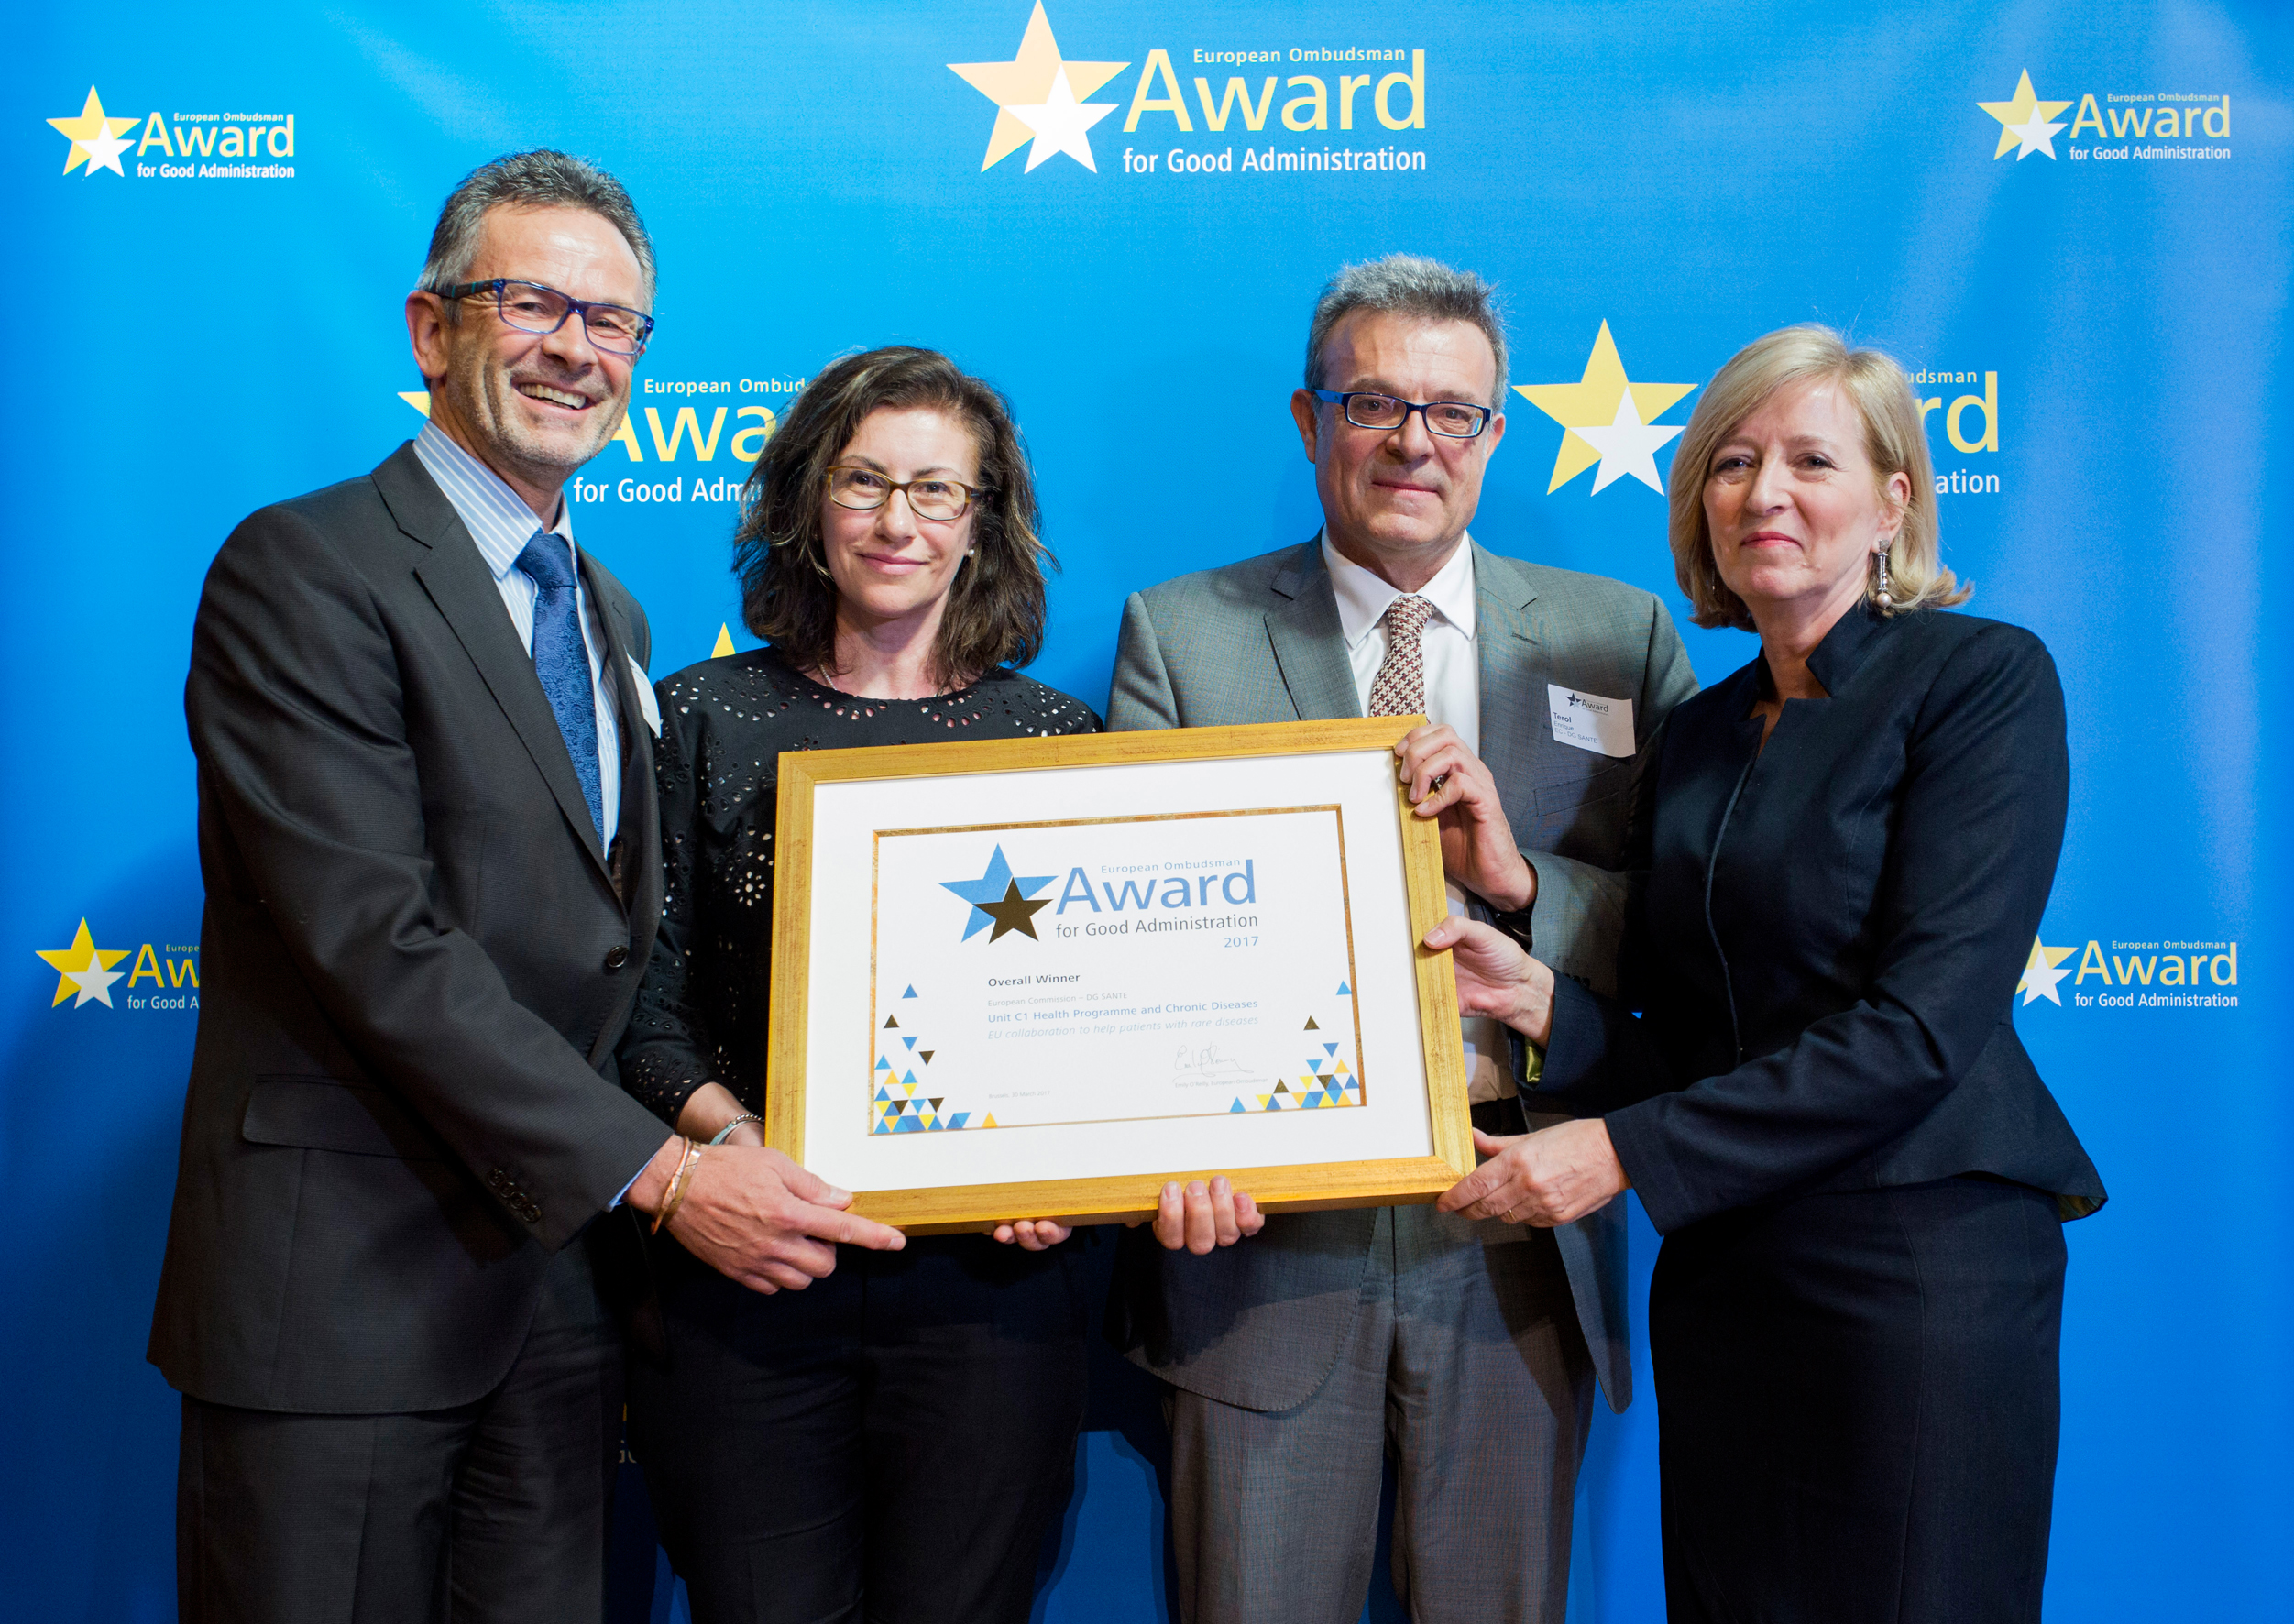 Los galardonados con el Premio del Defensor del Pueblo Europeo a la buena administración de 2017, pertenecientes a la Dirección General de Salud de la Comisión Europea, recibiendo el premio de manos de la Defensora del Pueblo Europeo, Emily O’Reilly.